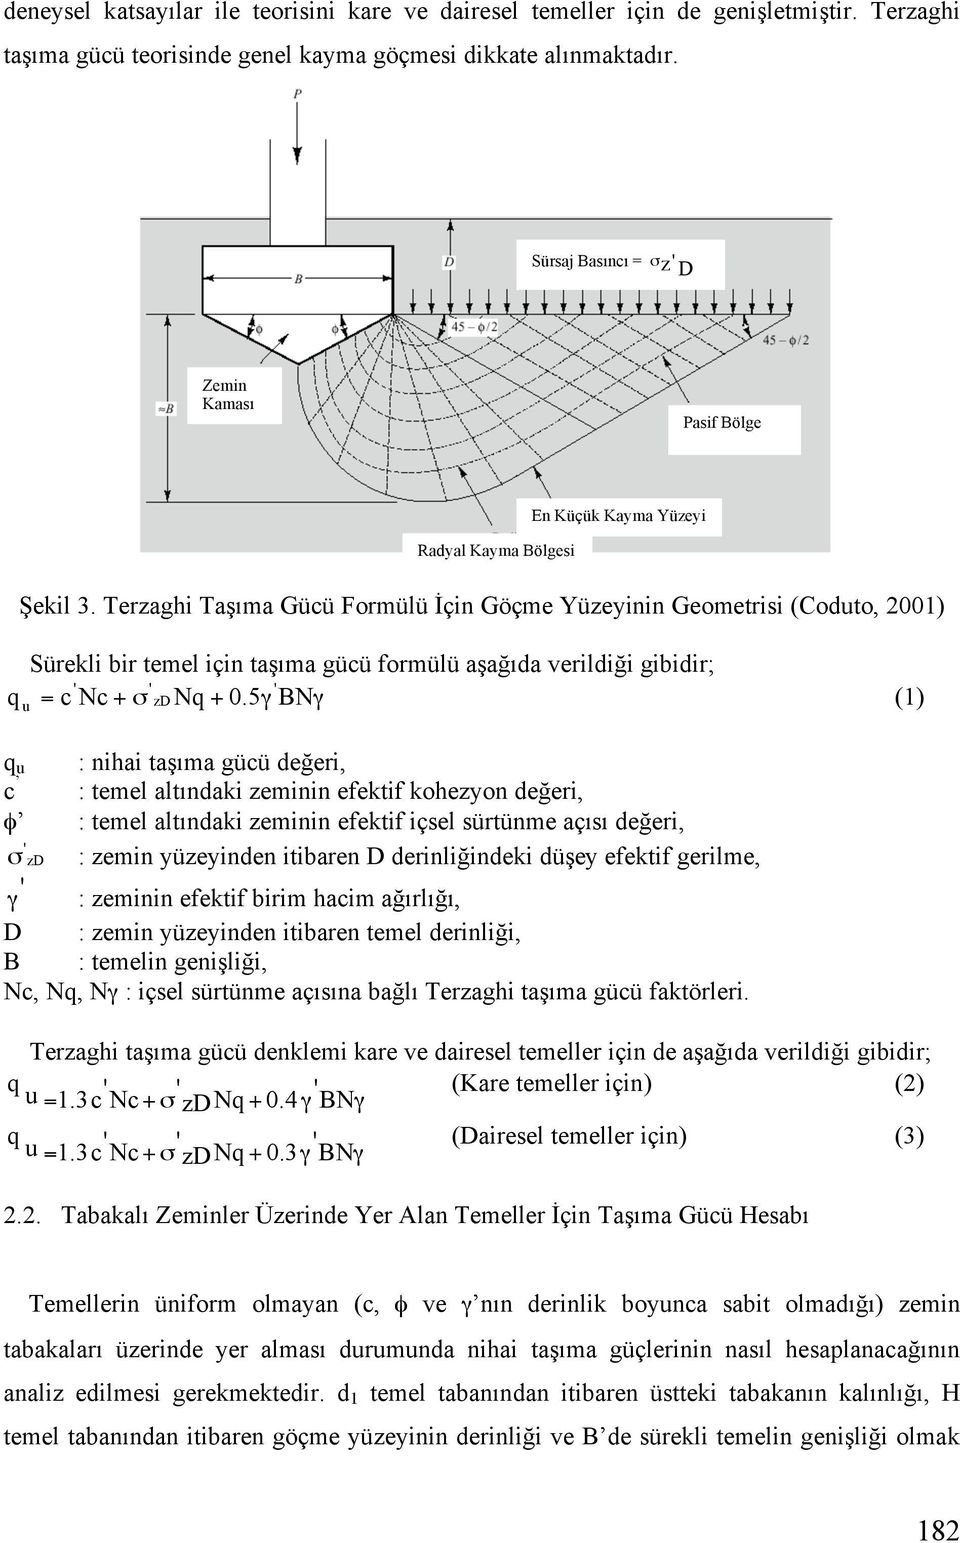 Terzaghi Ta ıma Gücü Formülü çin Göçme Yüzeyinin Geometrisi (Coduto, 2001) Sürekli bir temel için ta ıma gücü formülü a a ıda verildi i gibidir; ' ' ' q u = c Nc + zdnq + 0.